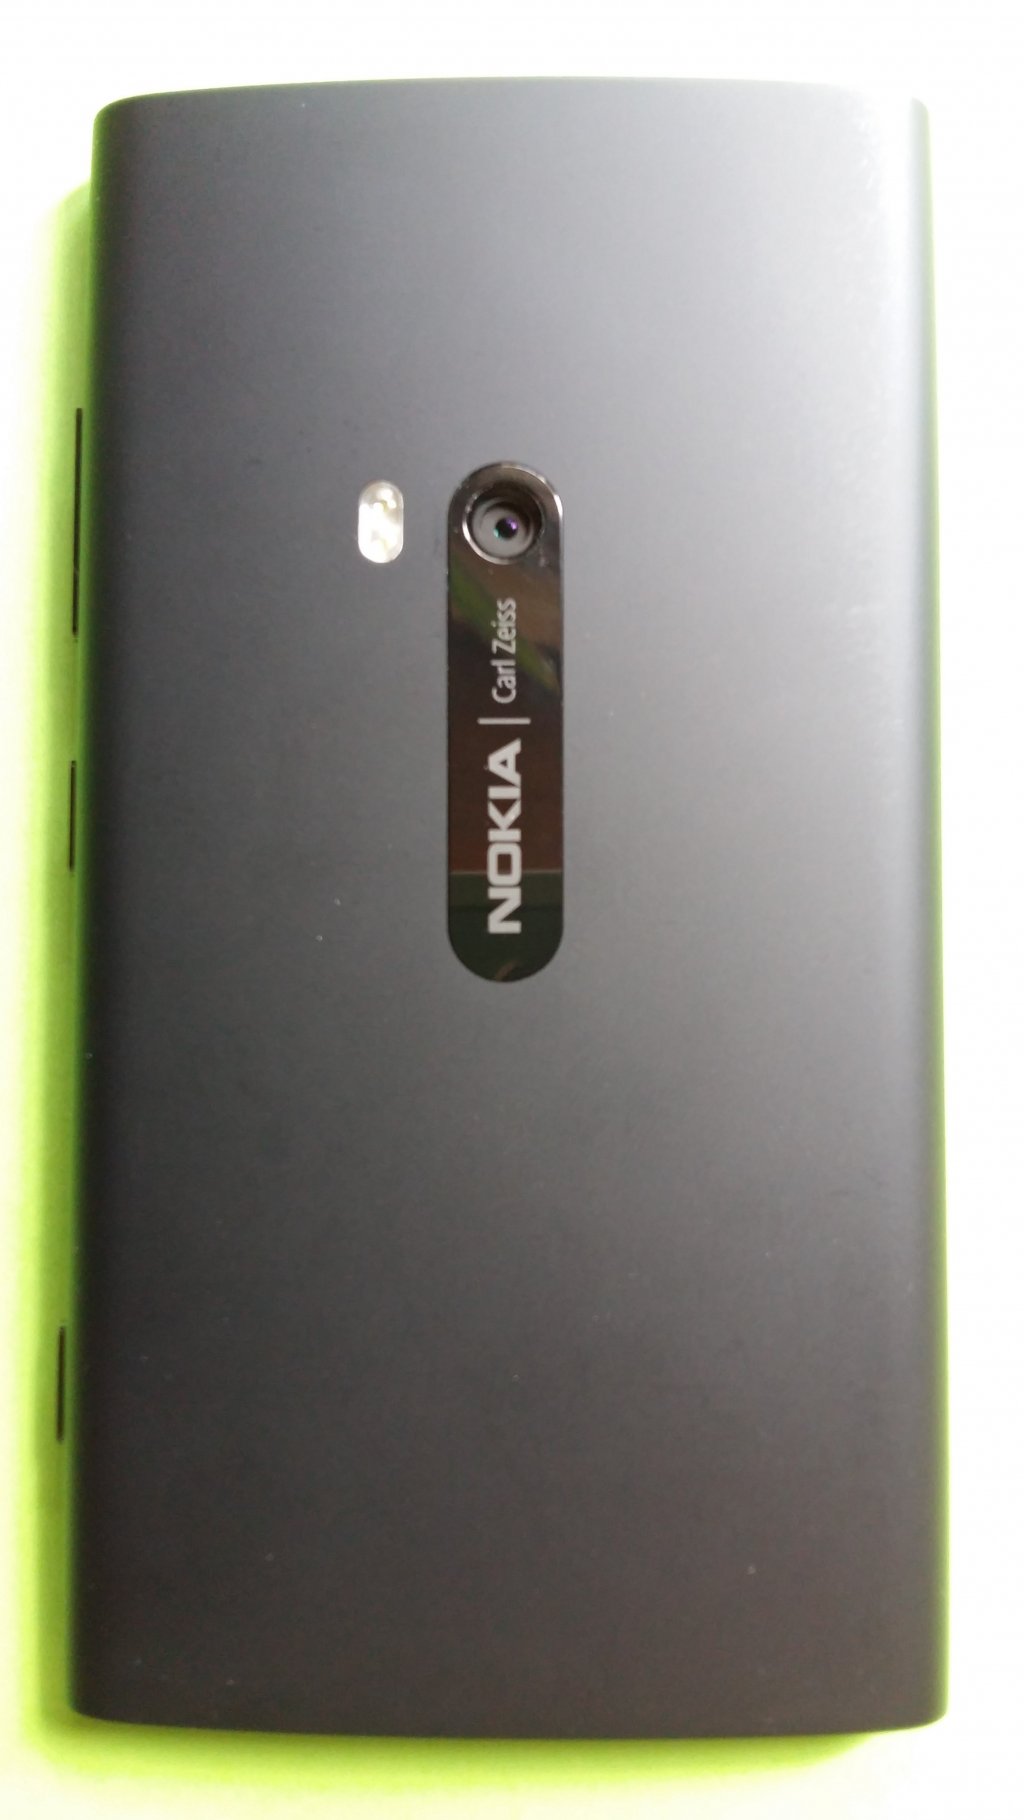 image-8000605-Nokia_920.1_Lumia_(1)2.w640.jpg